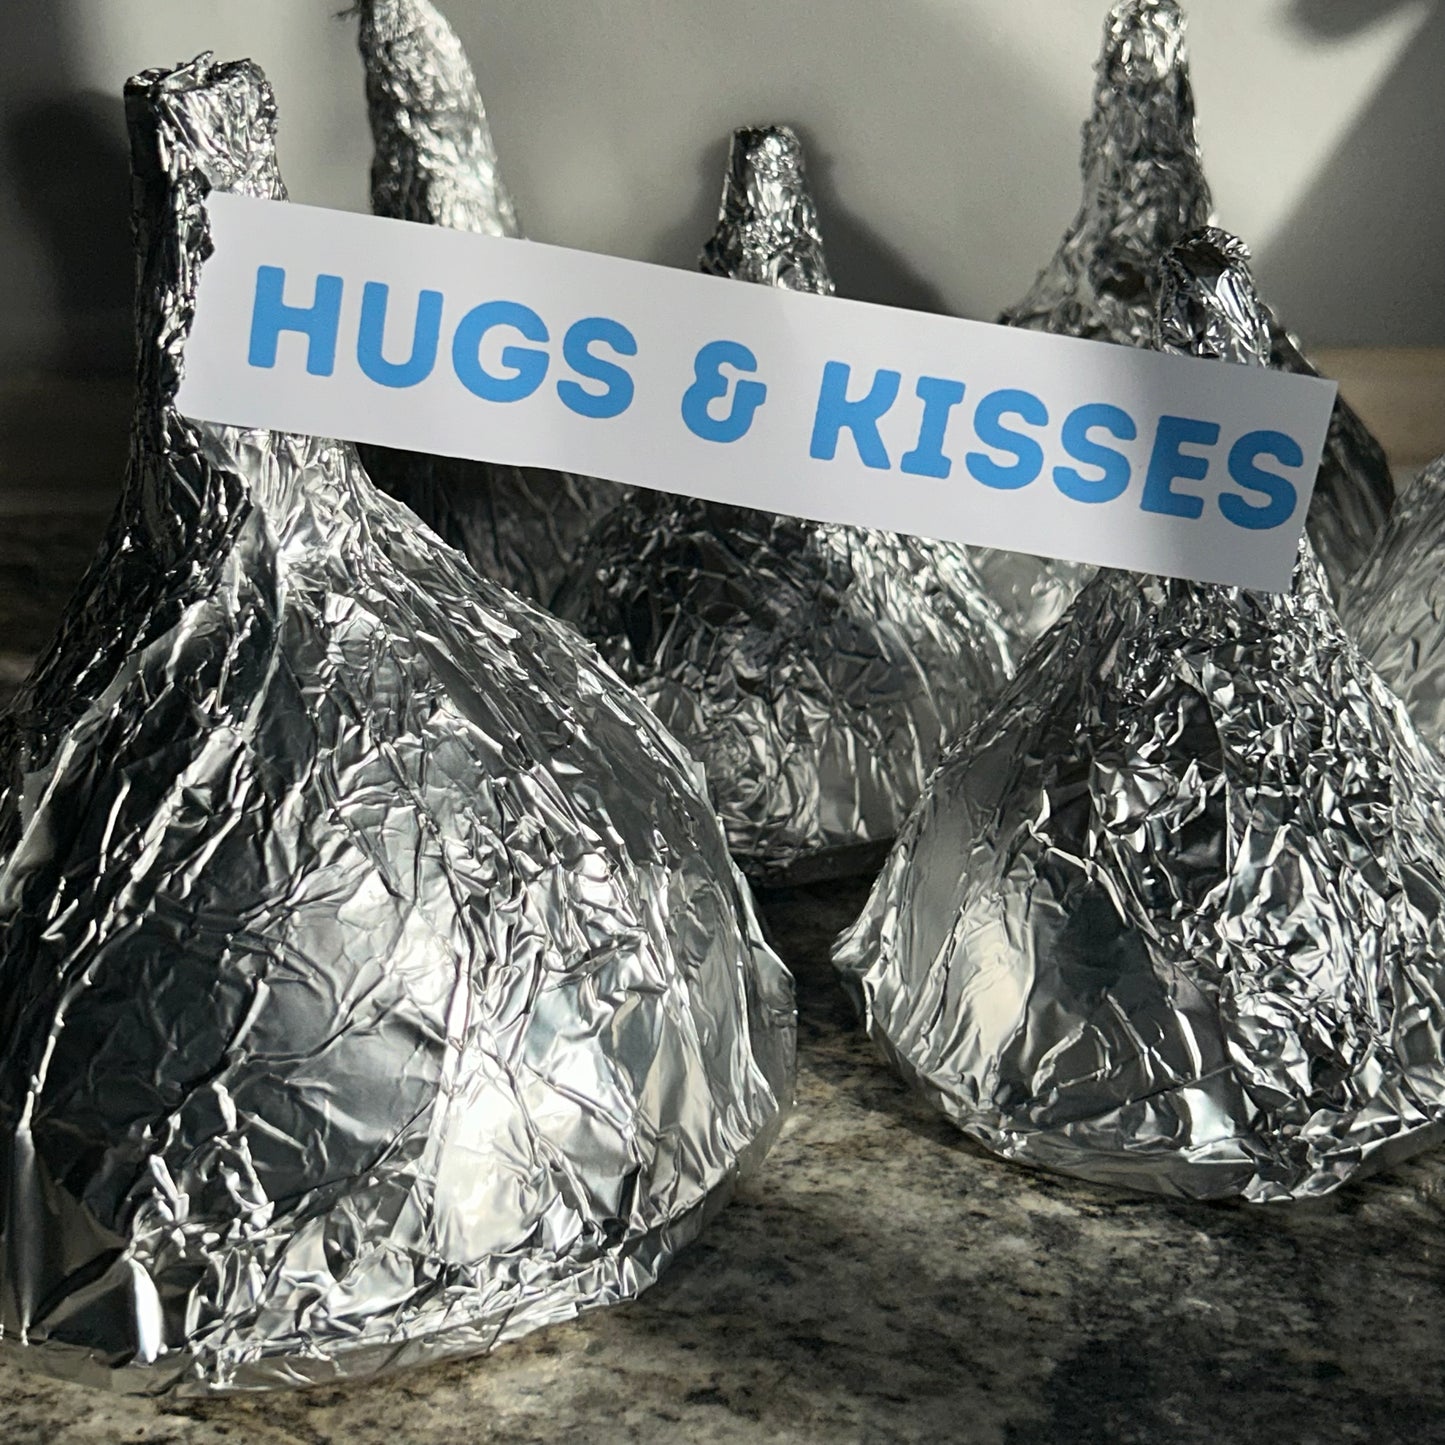 Hugs & Kisses Surprise 4-6 surprises in each!!!